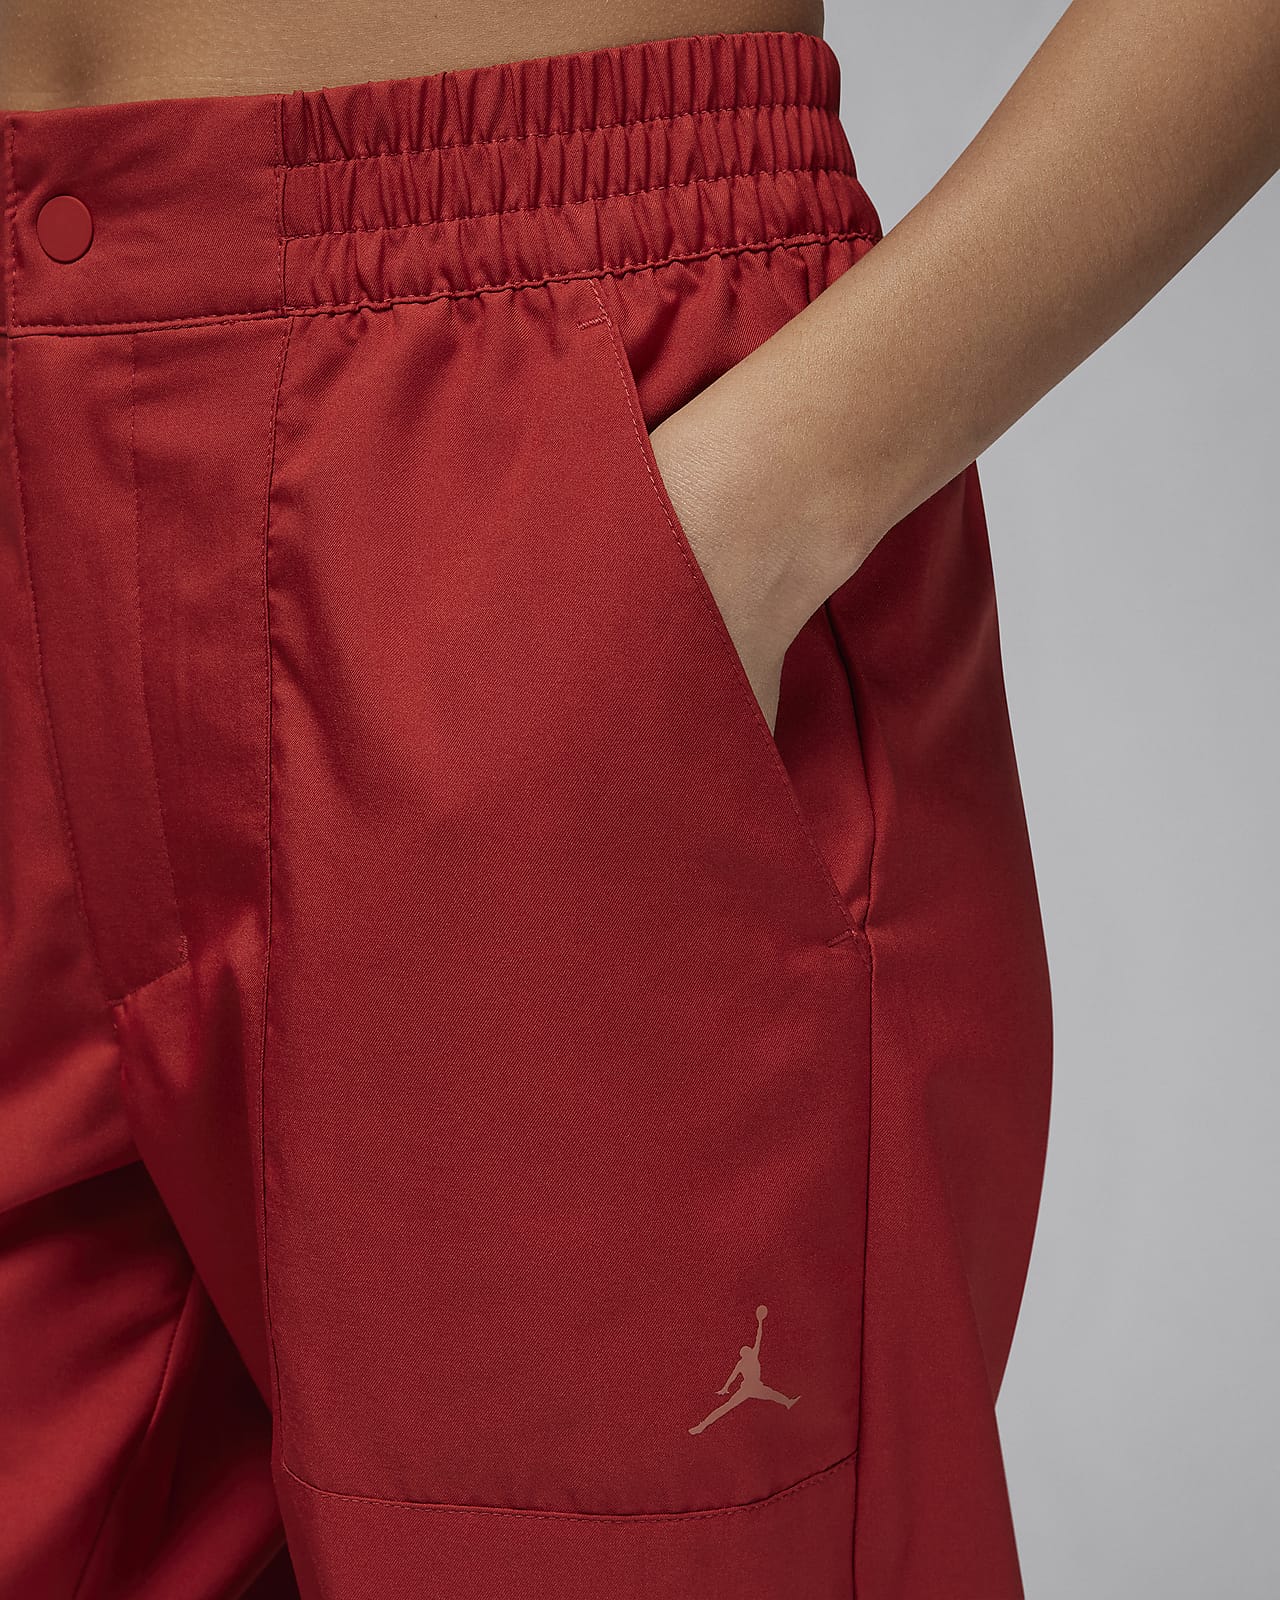 Jordan Women's Woven Trousers. Nike ID